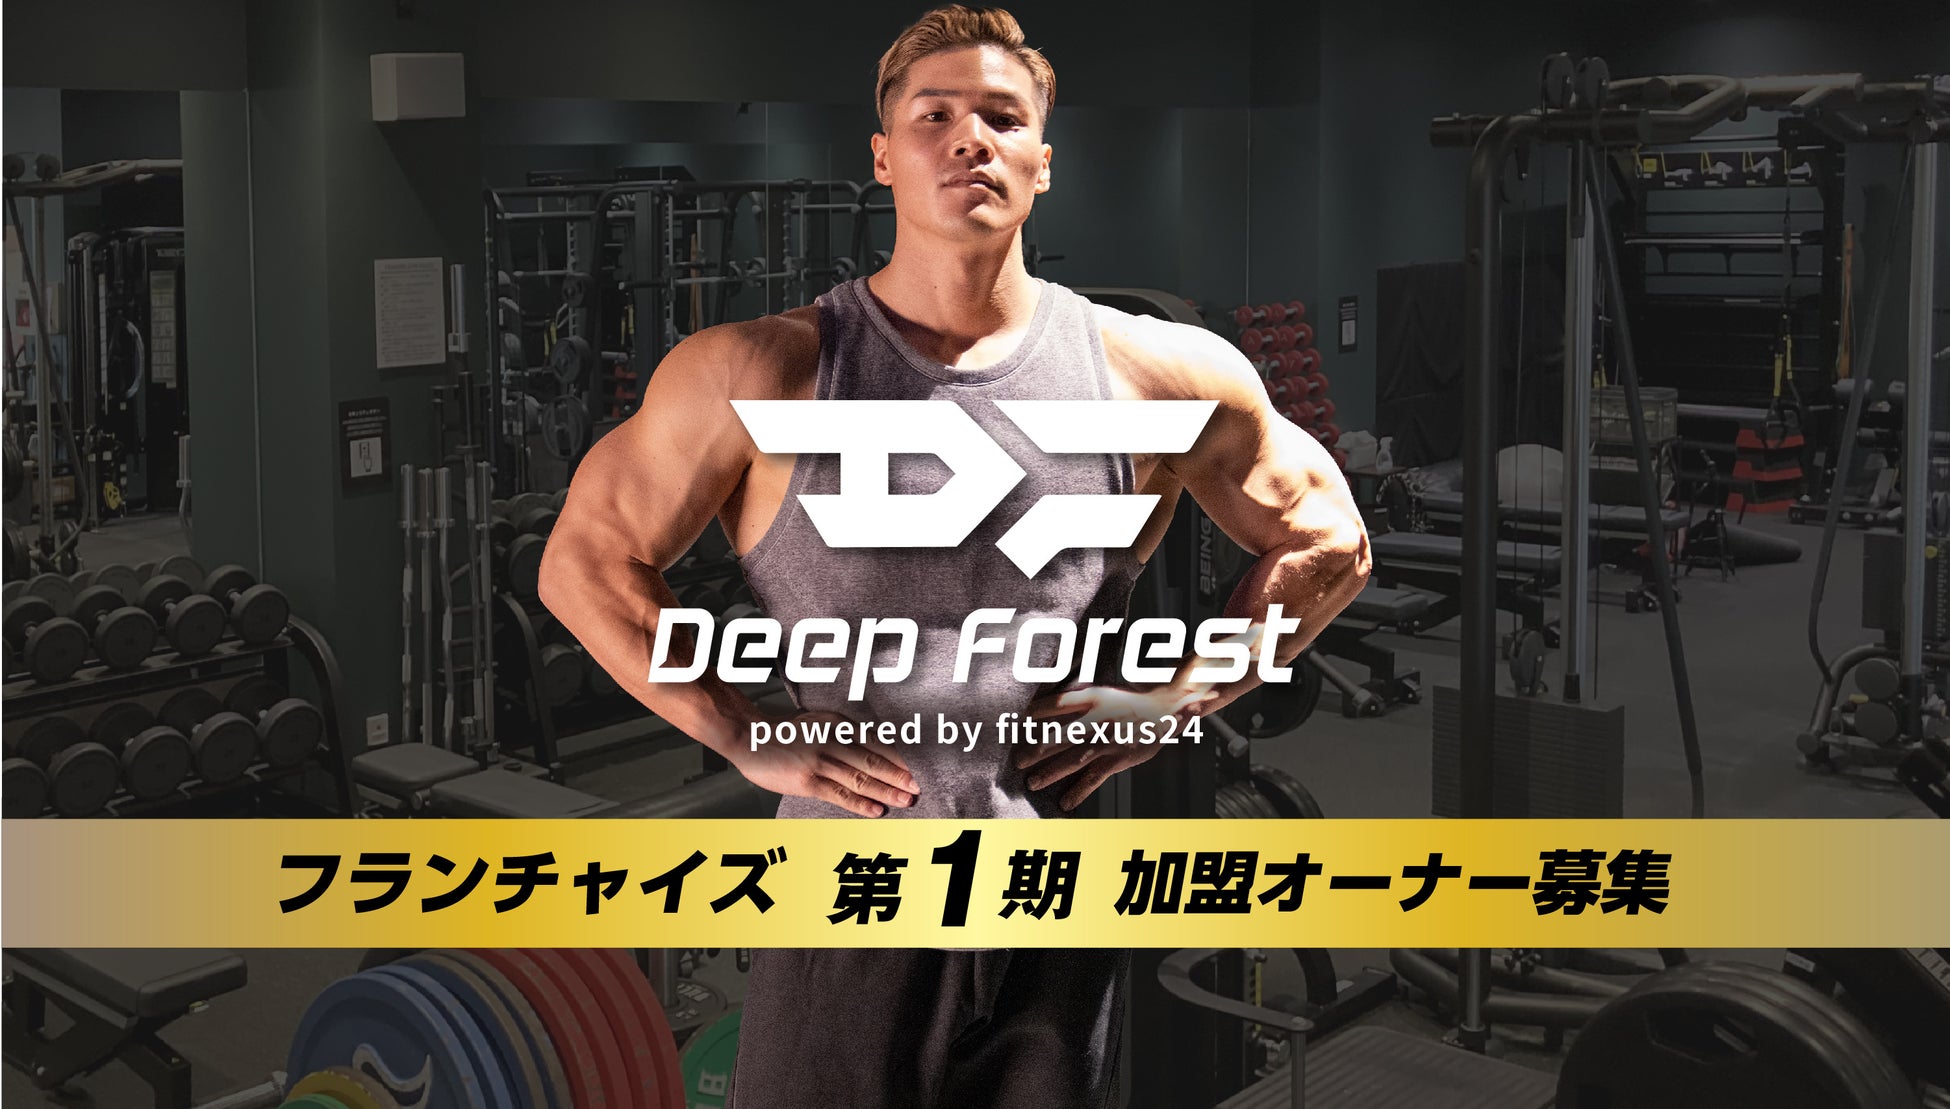 【国内初※】 IFBB PROフィジーク選手監修のFC型24hフィットネスジム「Deep Forest」加盟オーナー募集開始